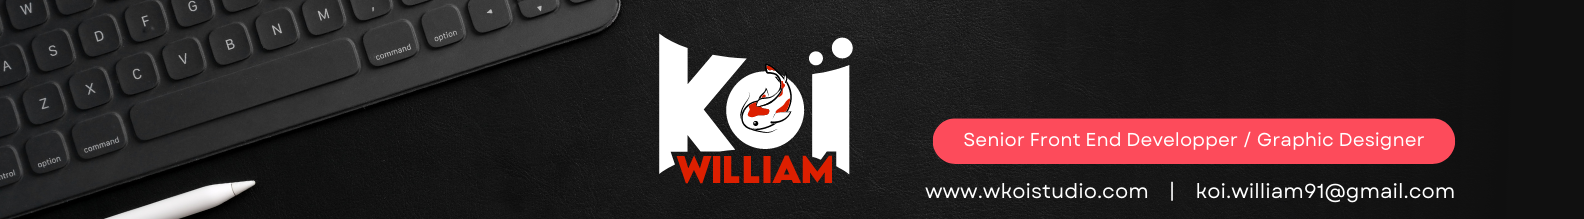 WILLIAM KOI's profile banner